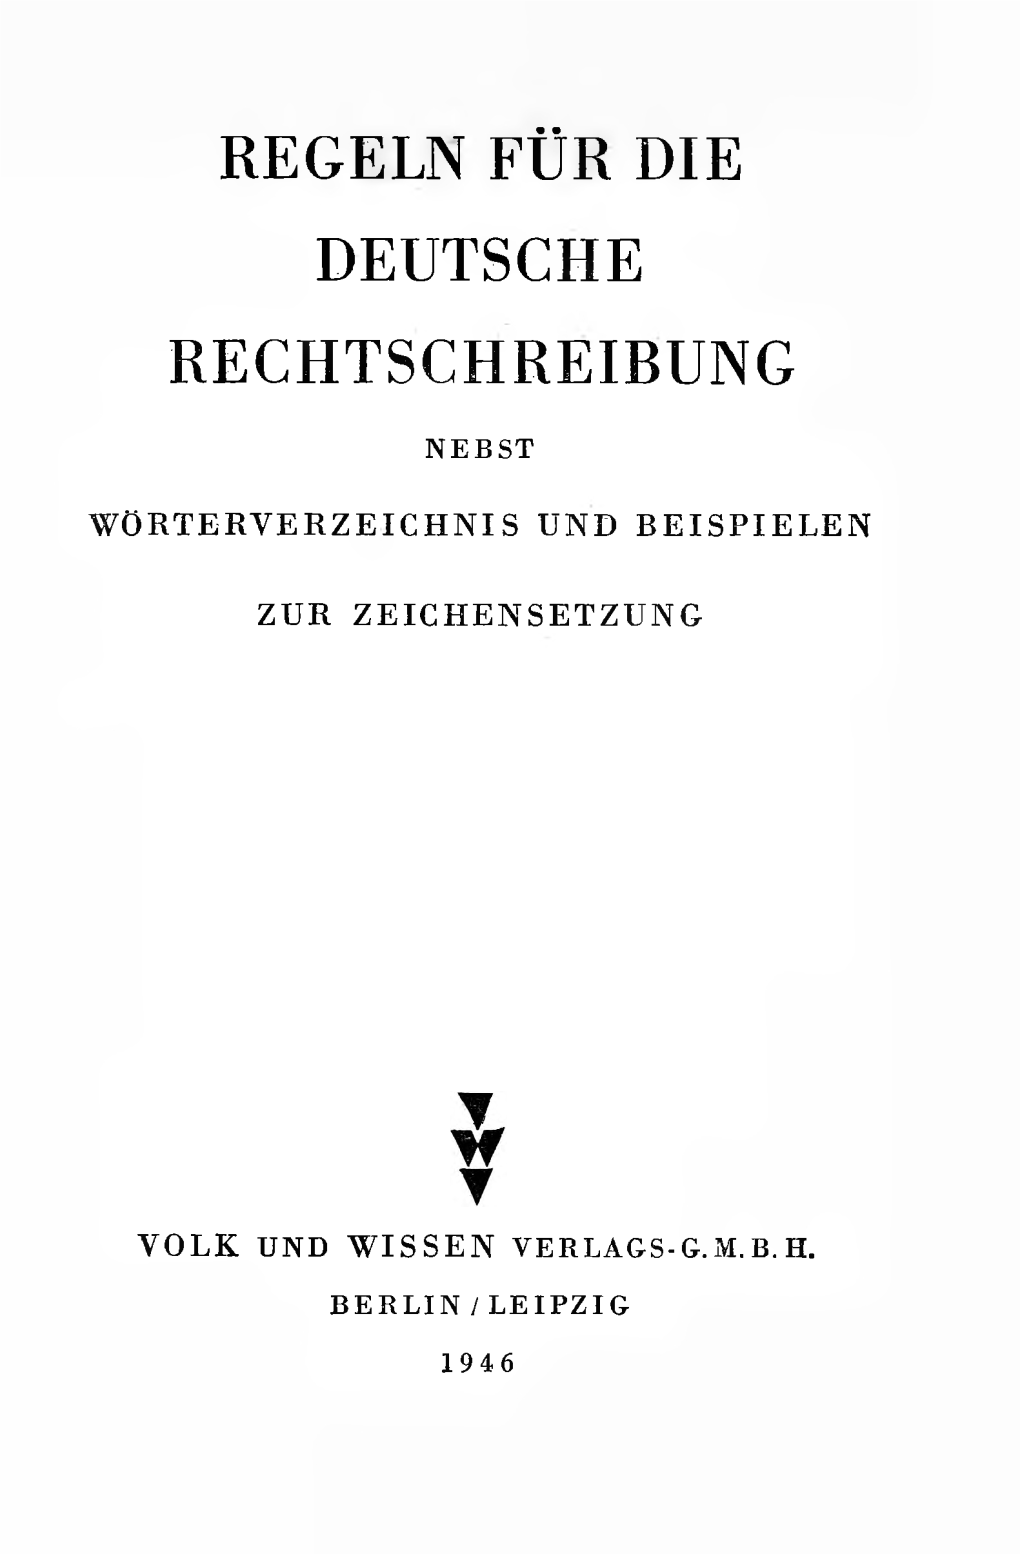 Regeln Für Die Deutsche Rechtschreibung Nebst Wörterver- Zeichnis“ Werden Seit 1880 Verbindlich in Unseren Schulen Geführt